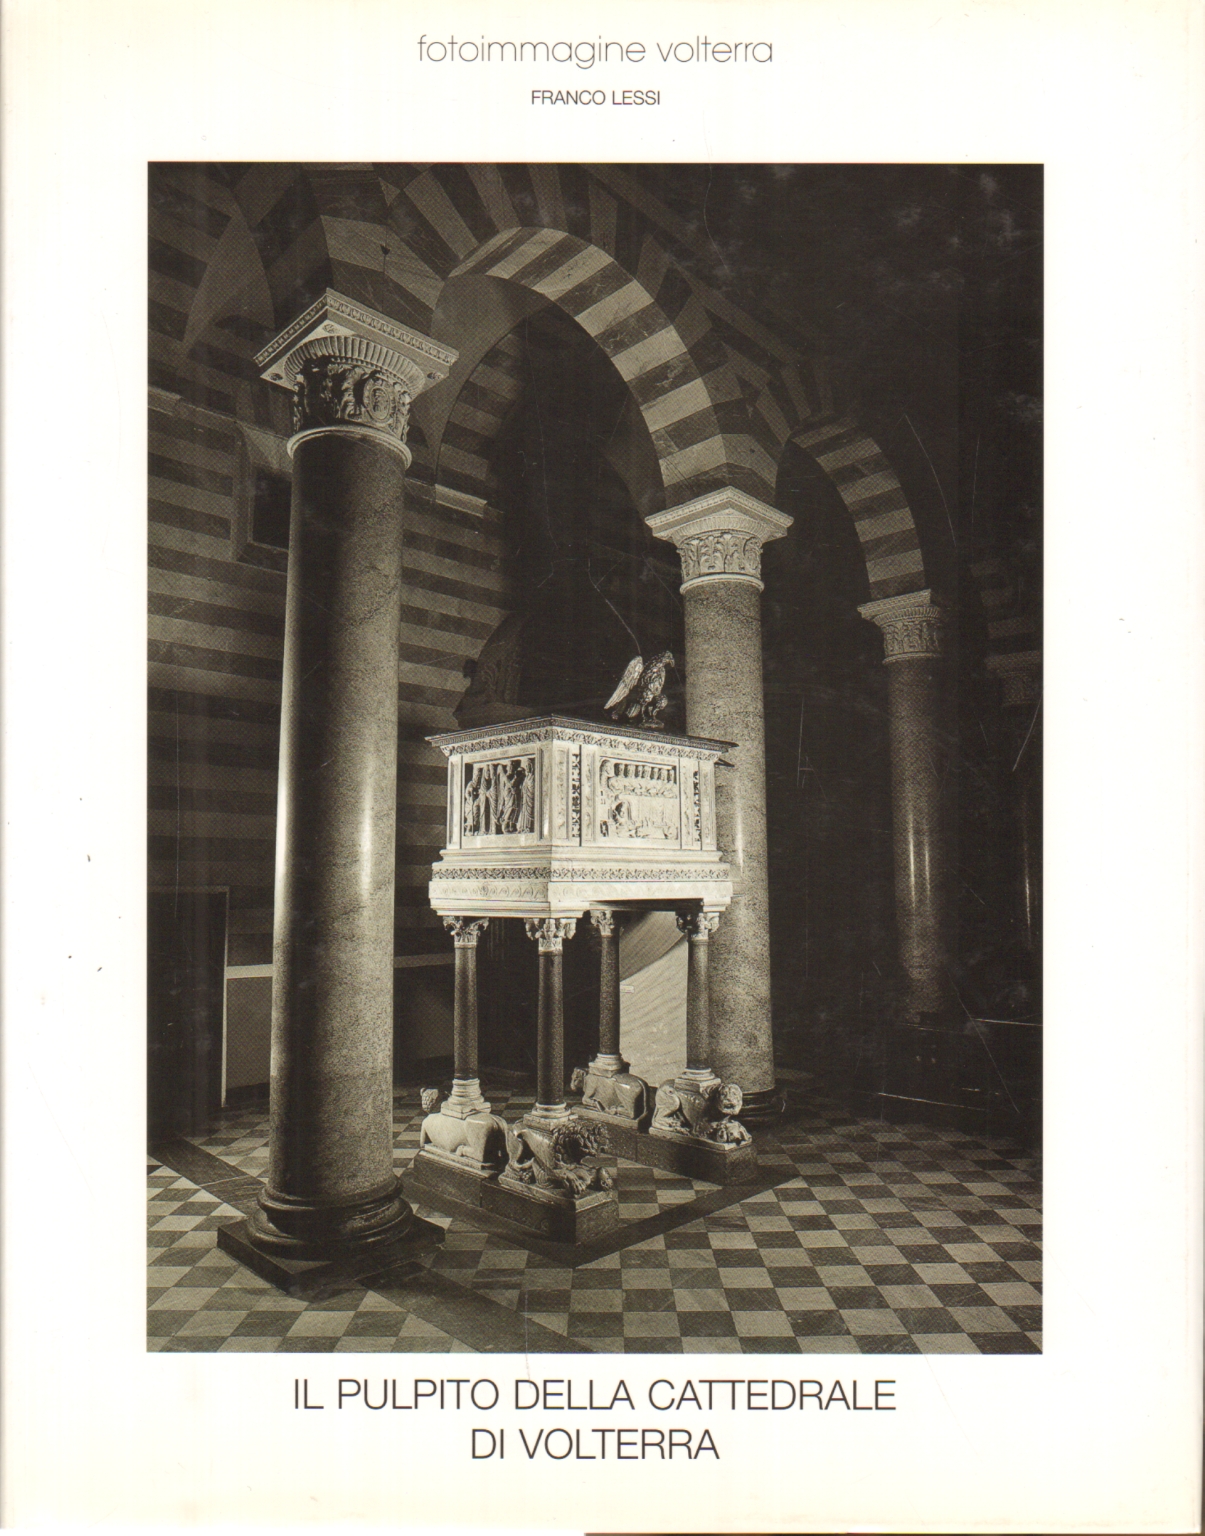 Il pulpito della cattedrale di Volterra, Franco Lessi